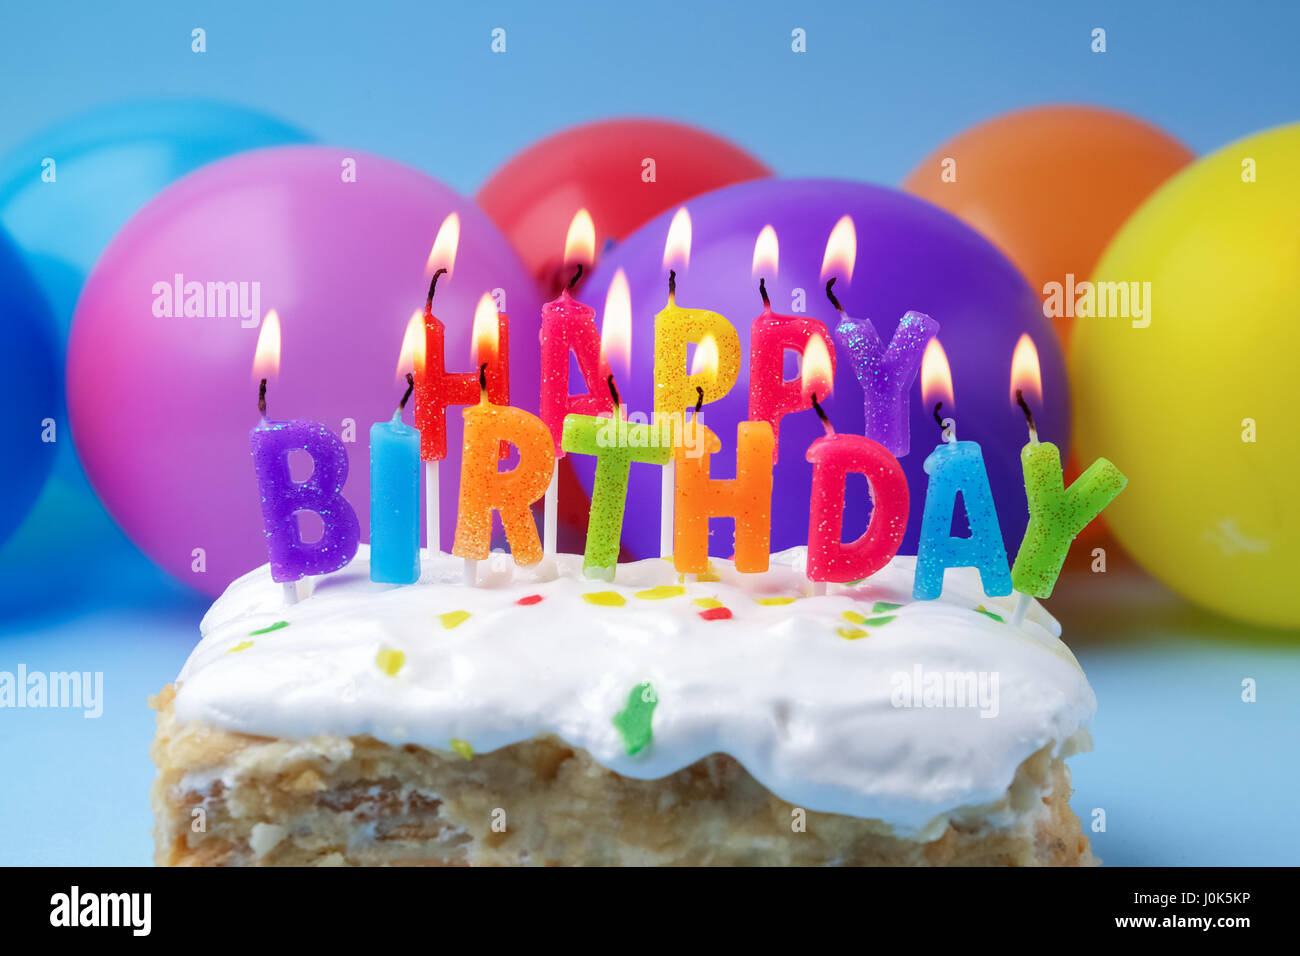 Kuchen mit Geburtstagsgrüße von brennenden Kerzen auf einem bunten  Luftballons-Hintergrund Stockfotografie - Alamy